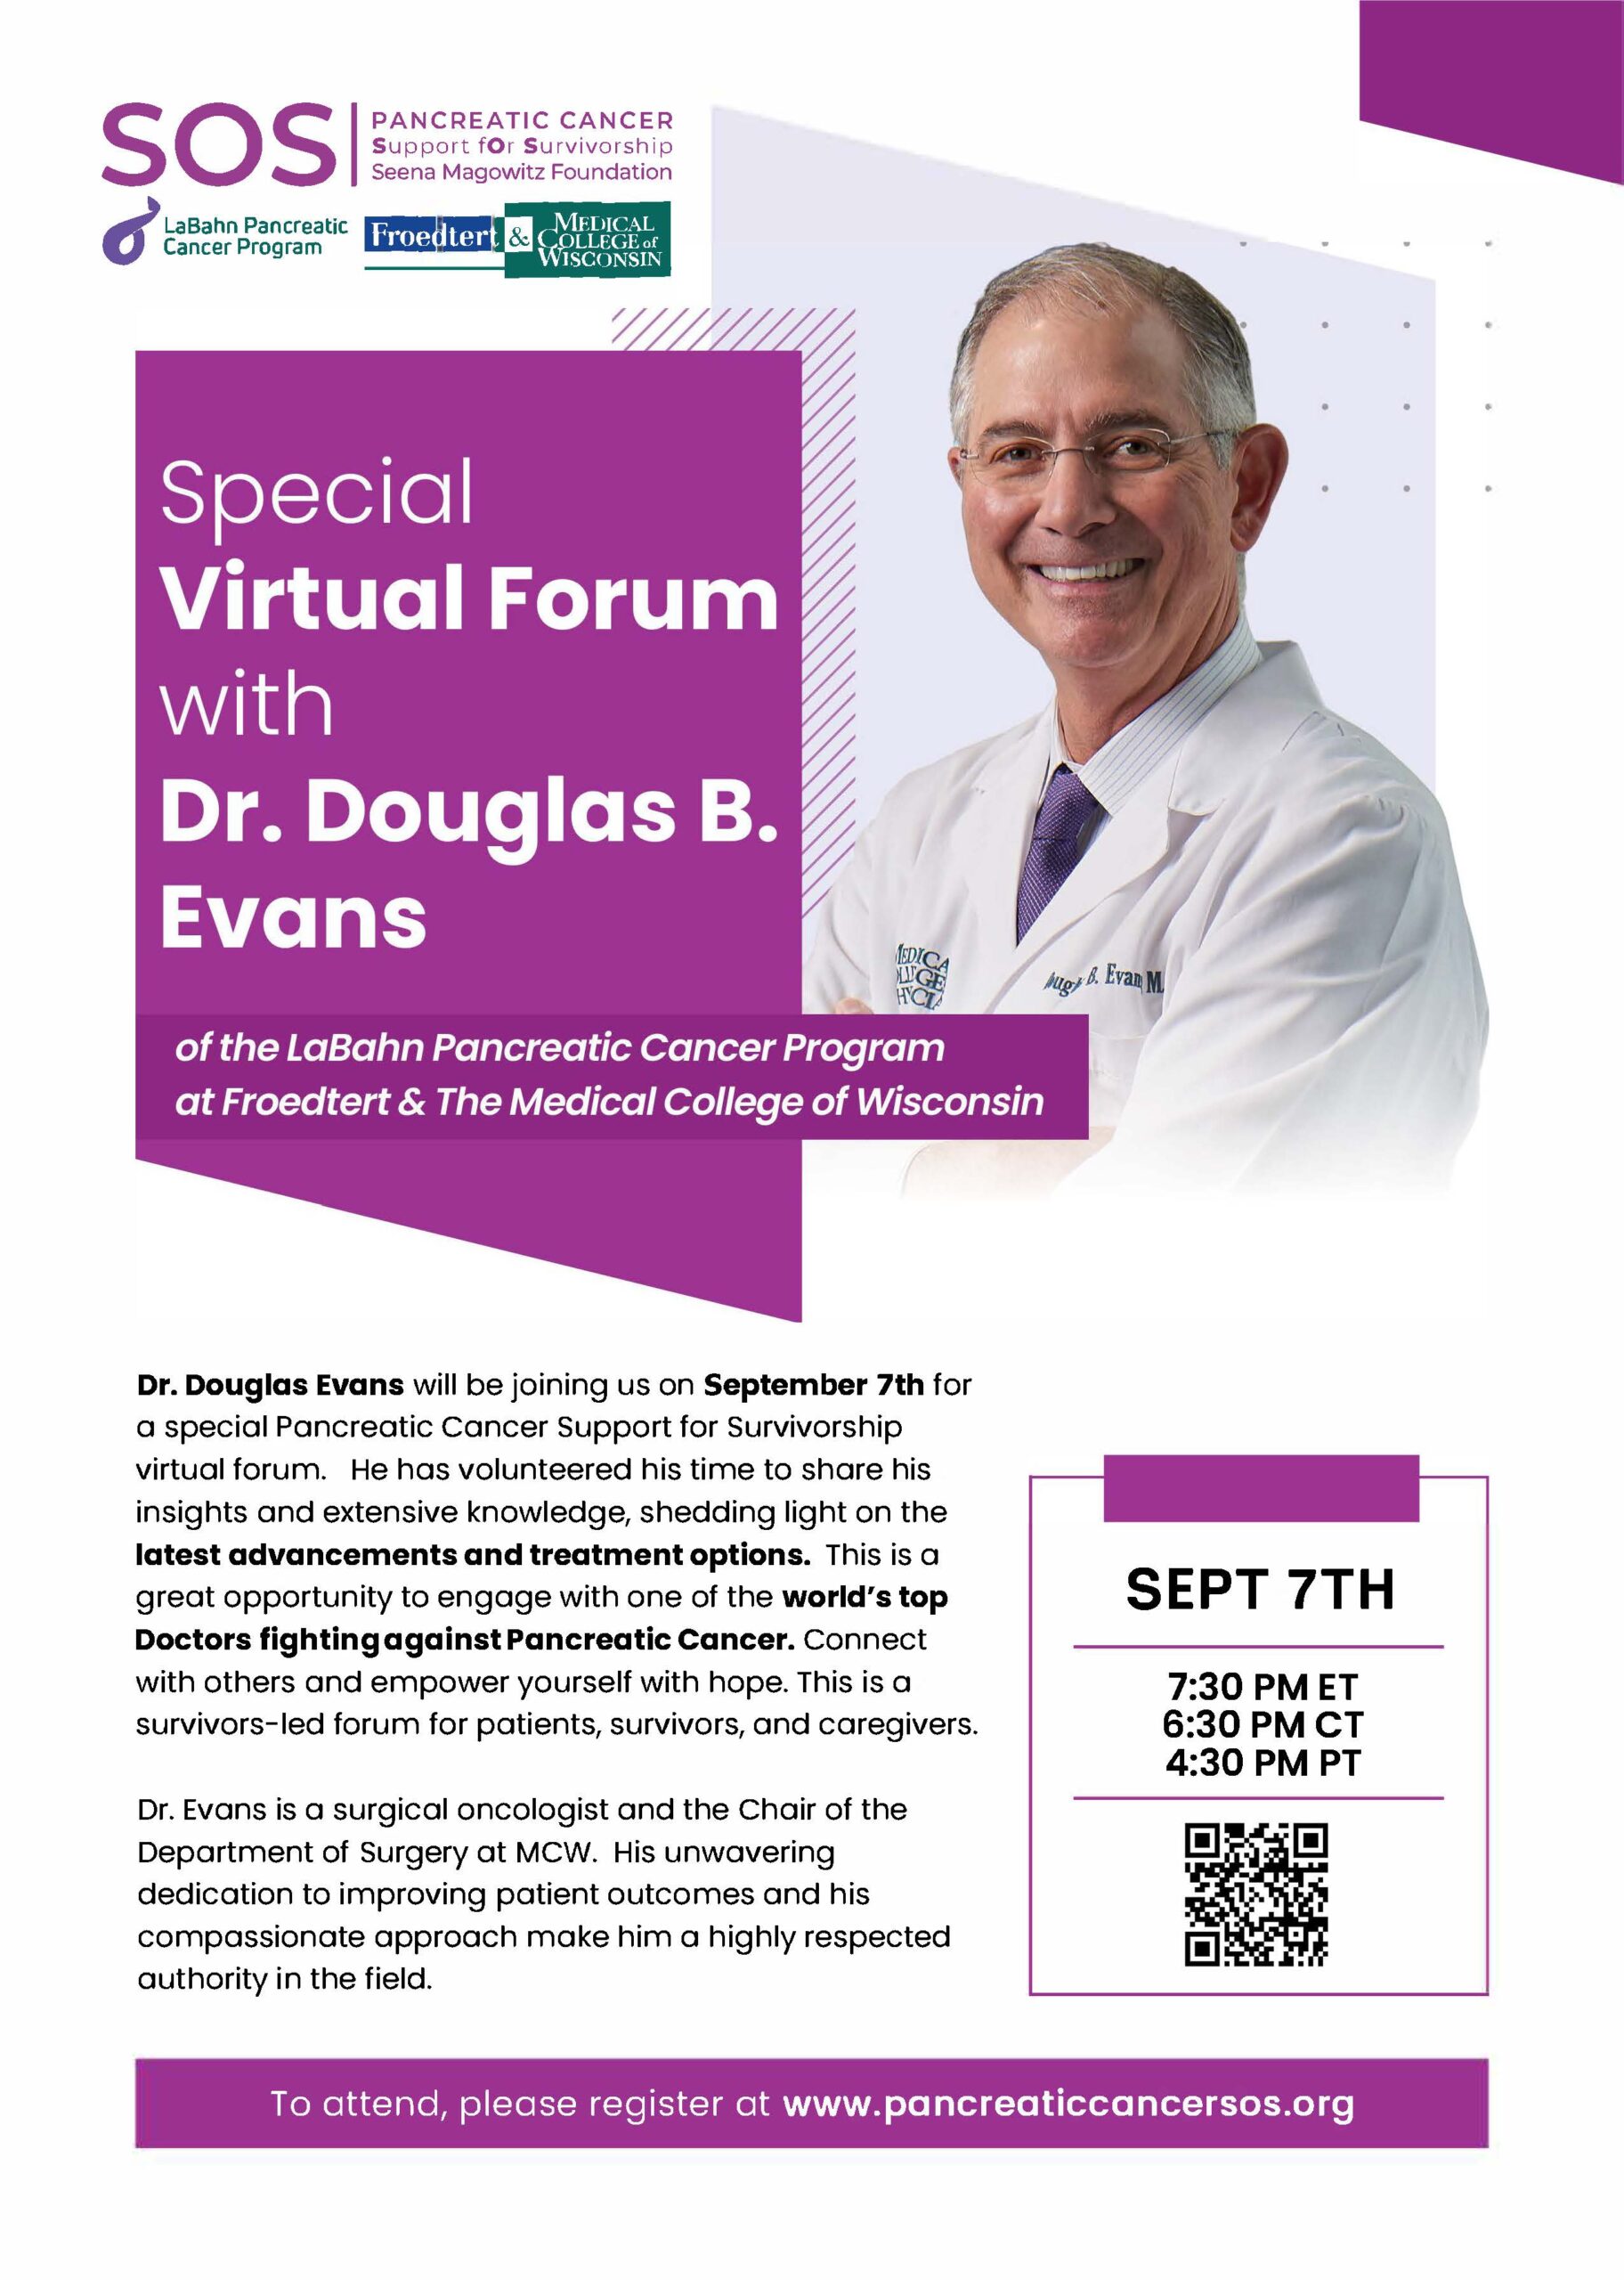 Dr. Douglas B. Evans